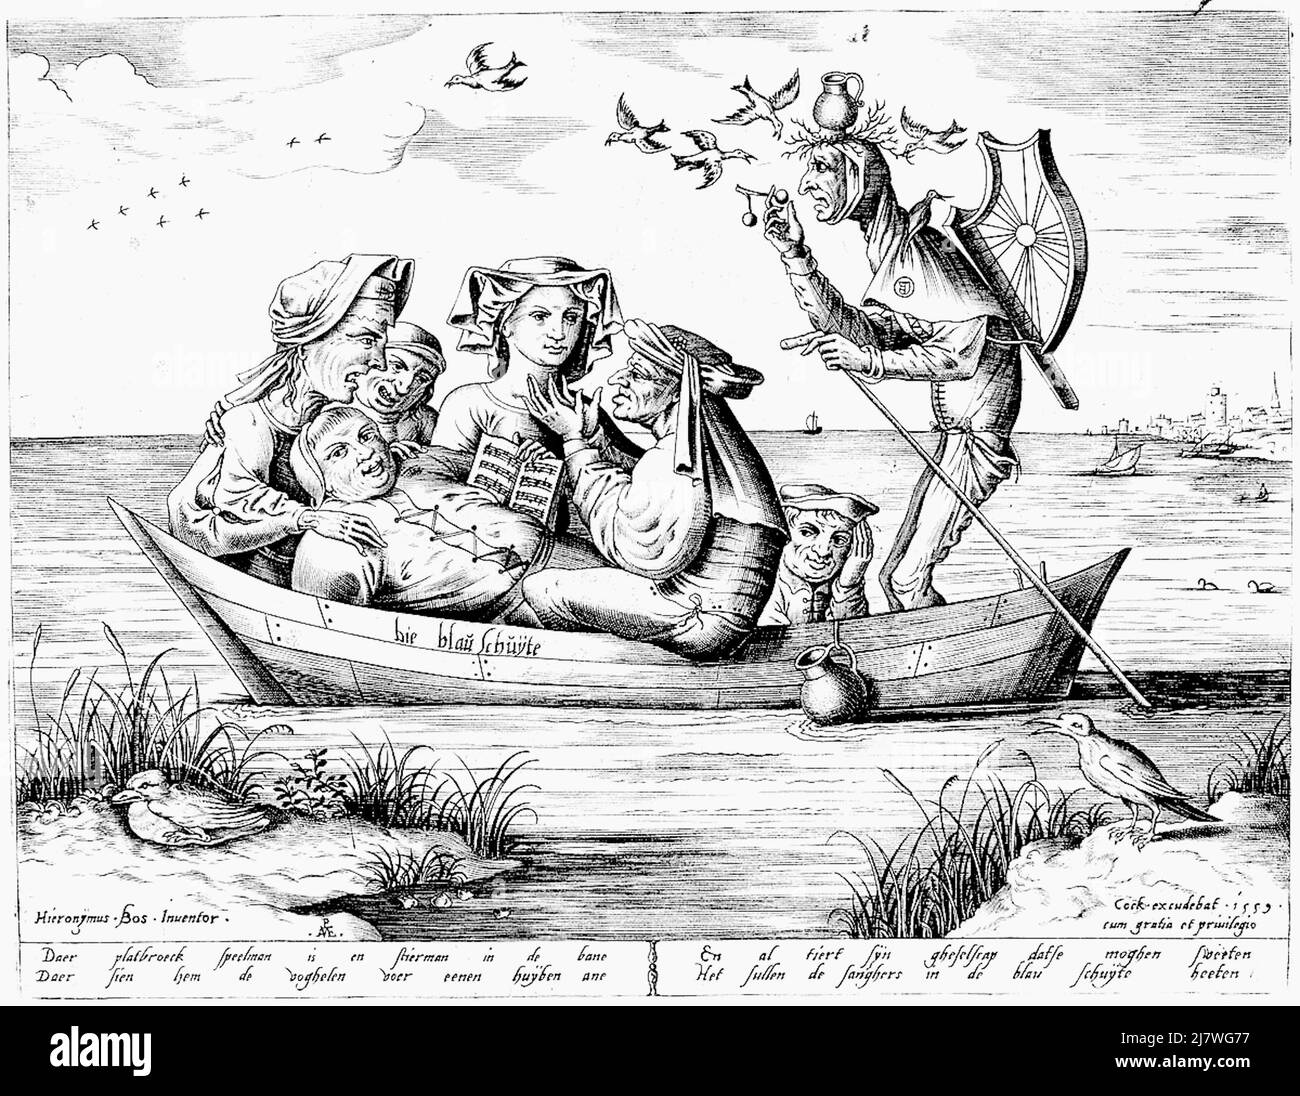 Pieter van der Heyden nach Hieronymus Bosch - das Schiff der Narren - 1559 Stockfoto